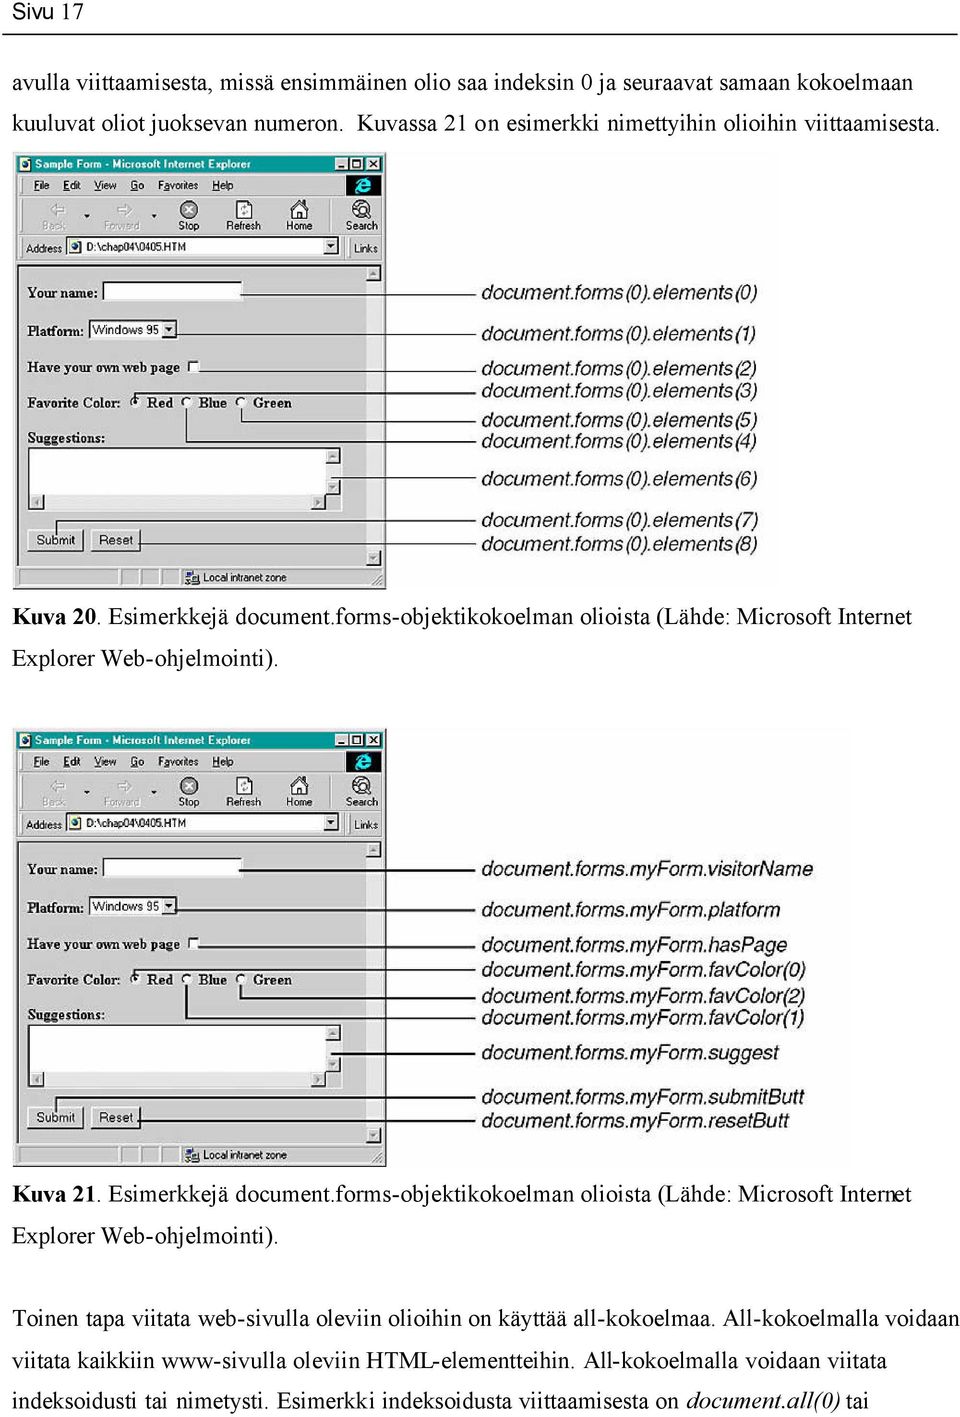 Kuva 21. Esimerkkejä document.forms-objektikokoelman olioista (Lähde: Microsoft Internet Explorer Web-ohjelmointi).